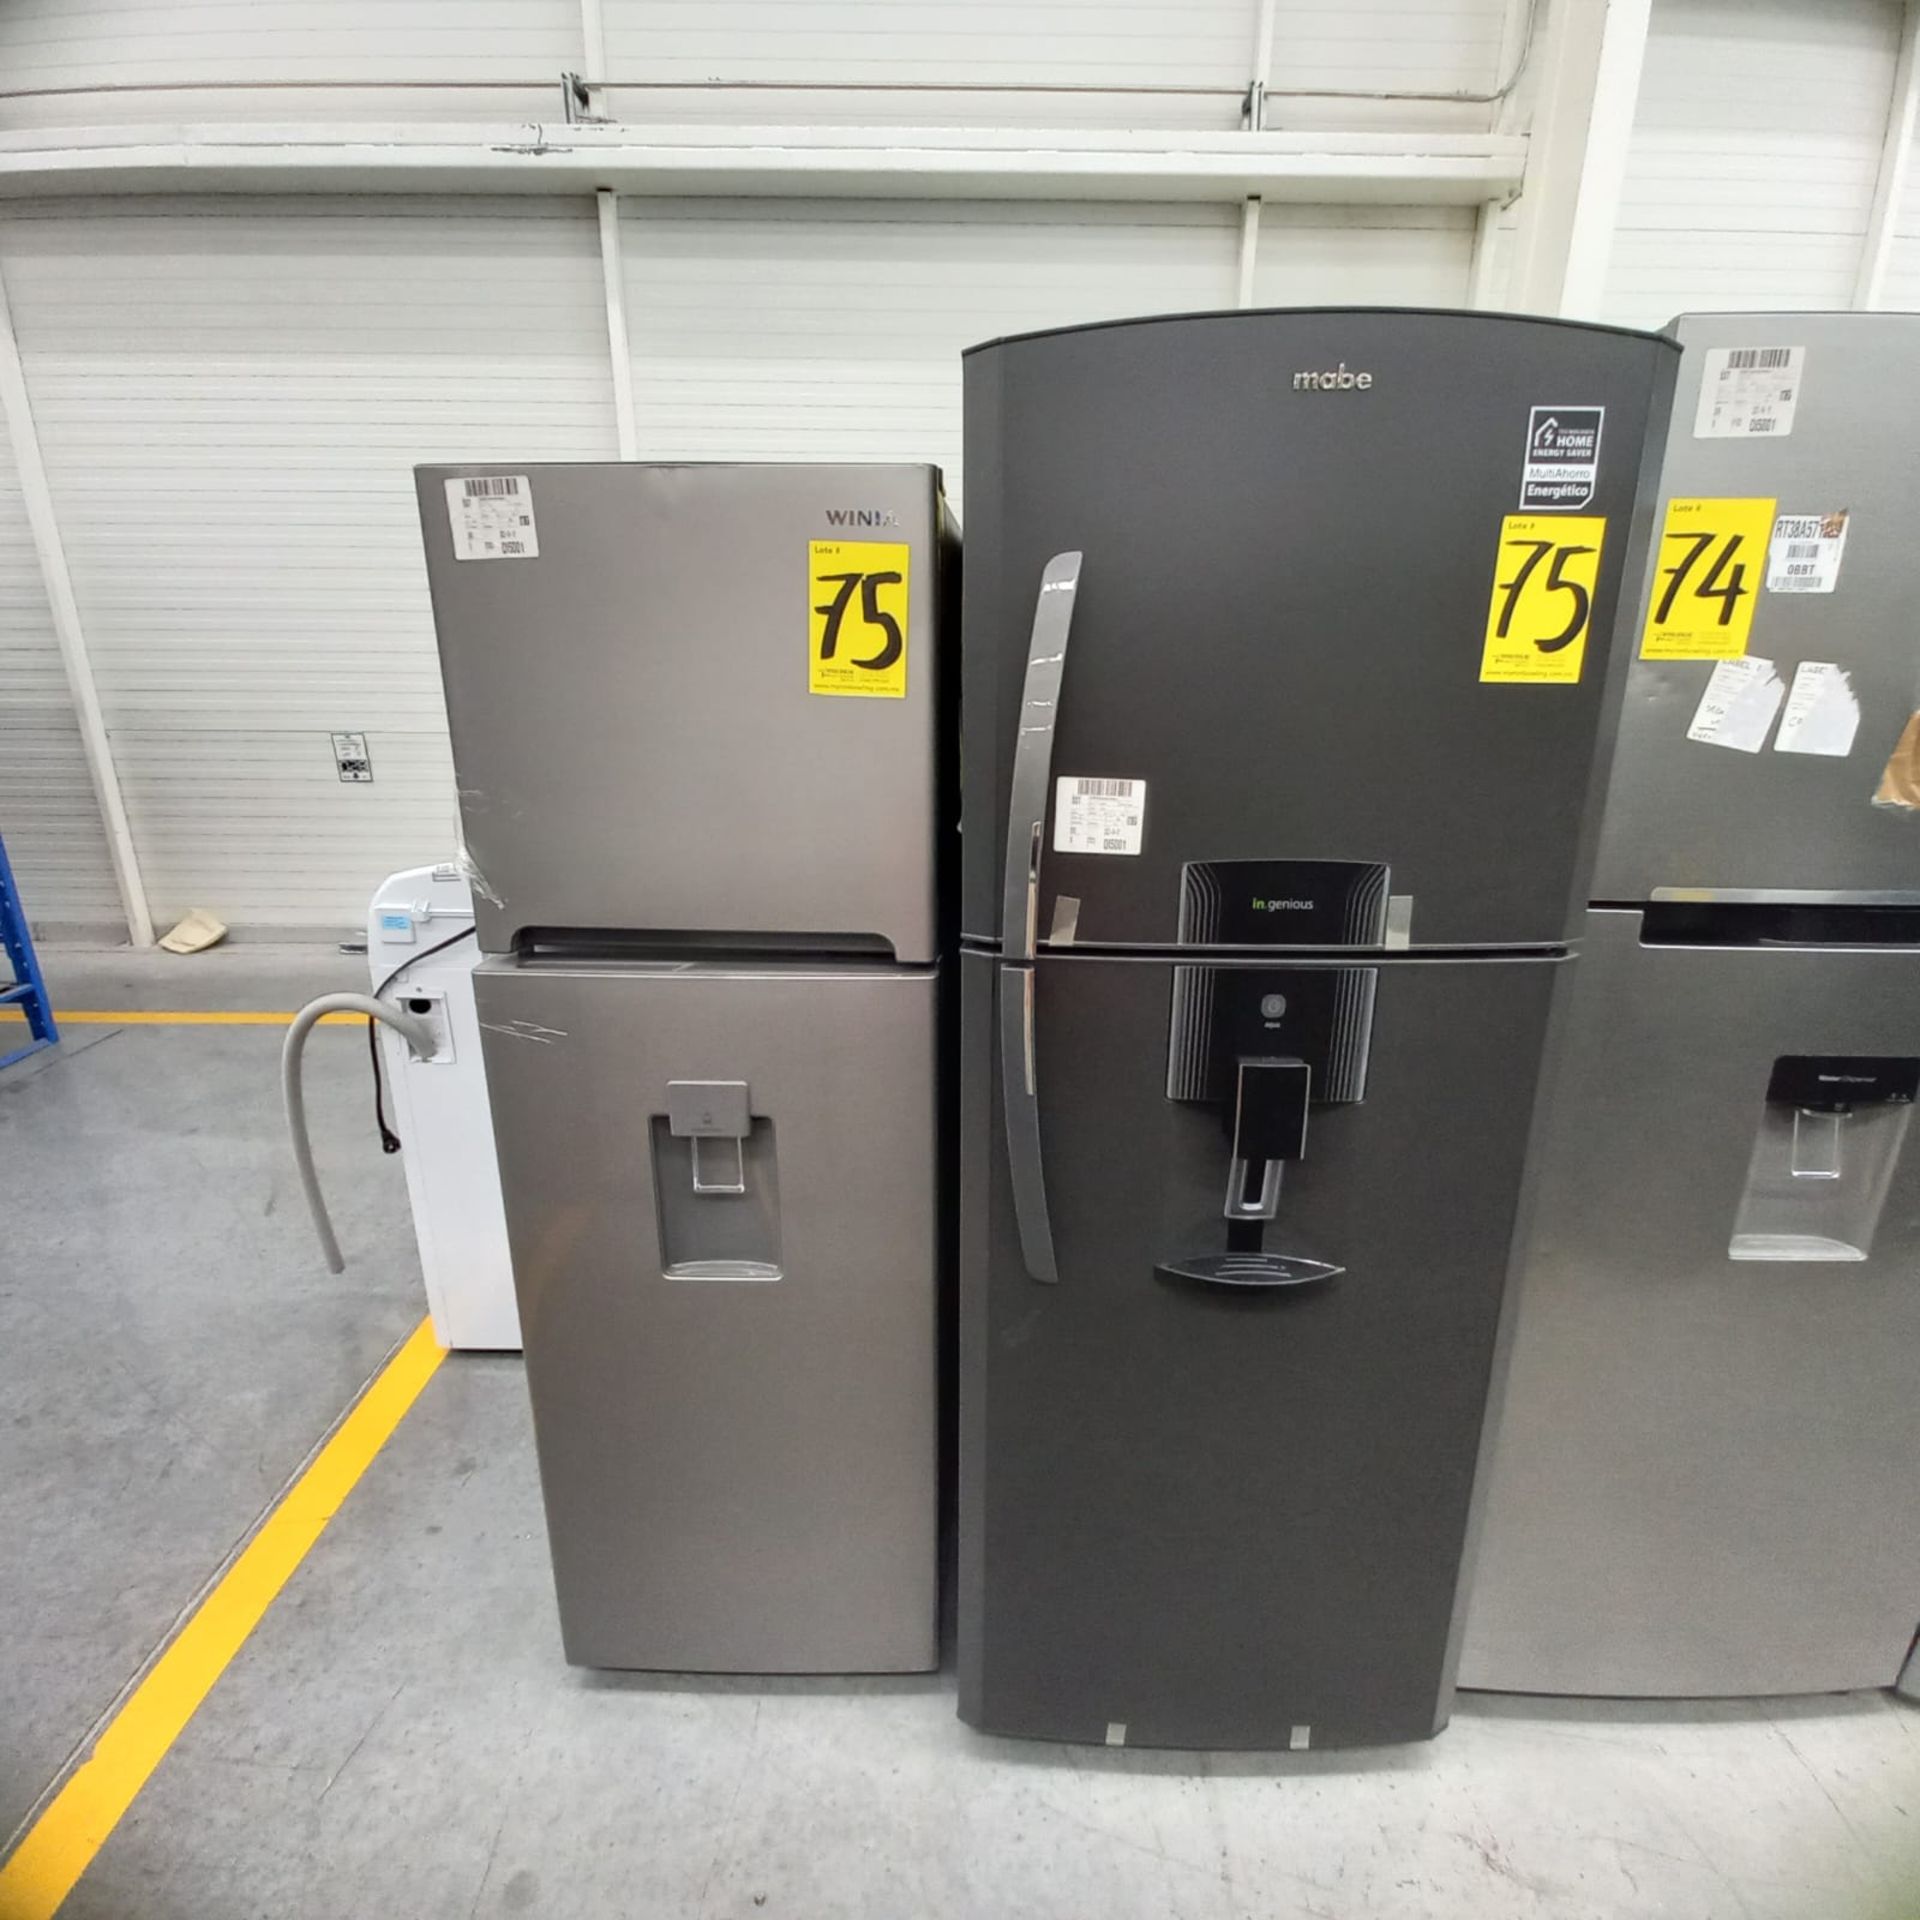 Lote De 2 Refrigeradores: 1 Refrigerador Marca Mabe, 1 Refrigerador Marca Winia, Distintos Modelos - Image 3 of 23